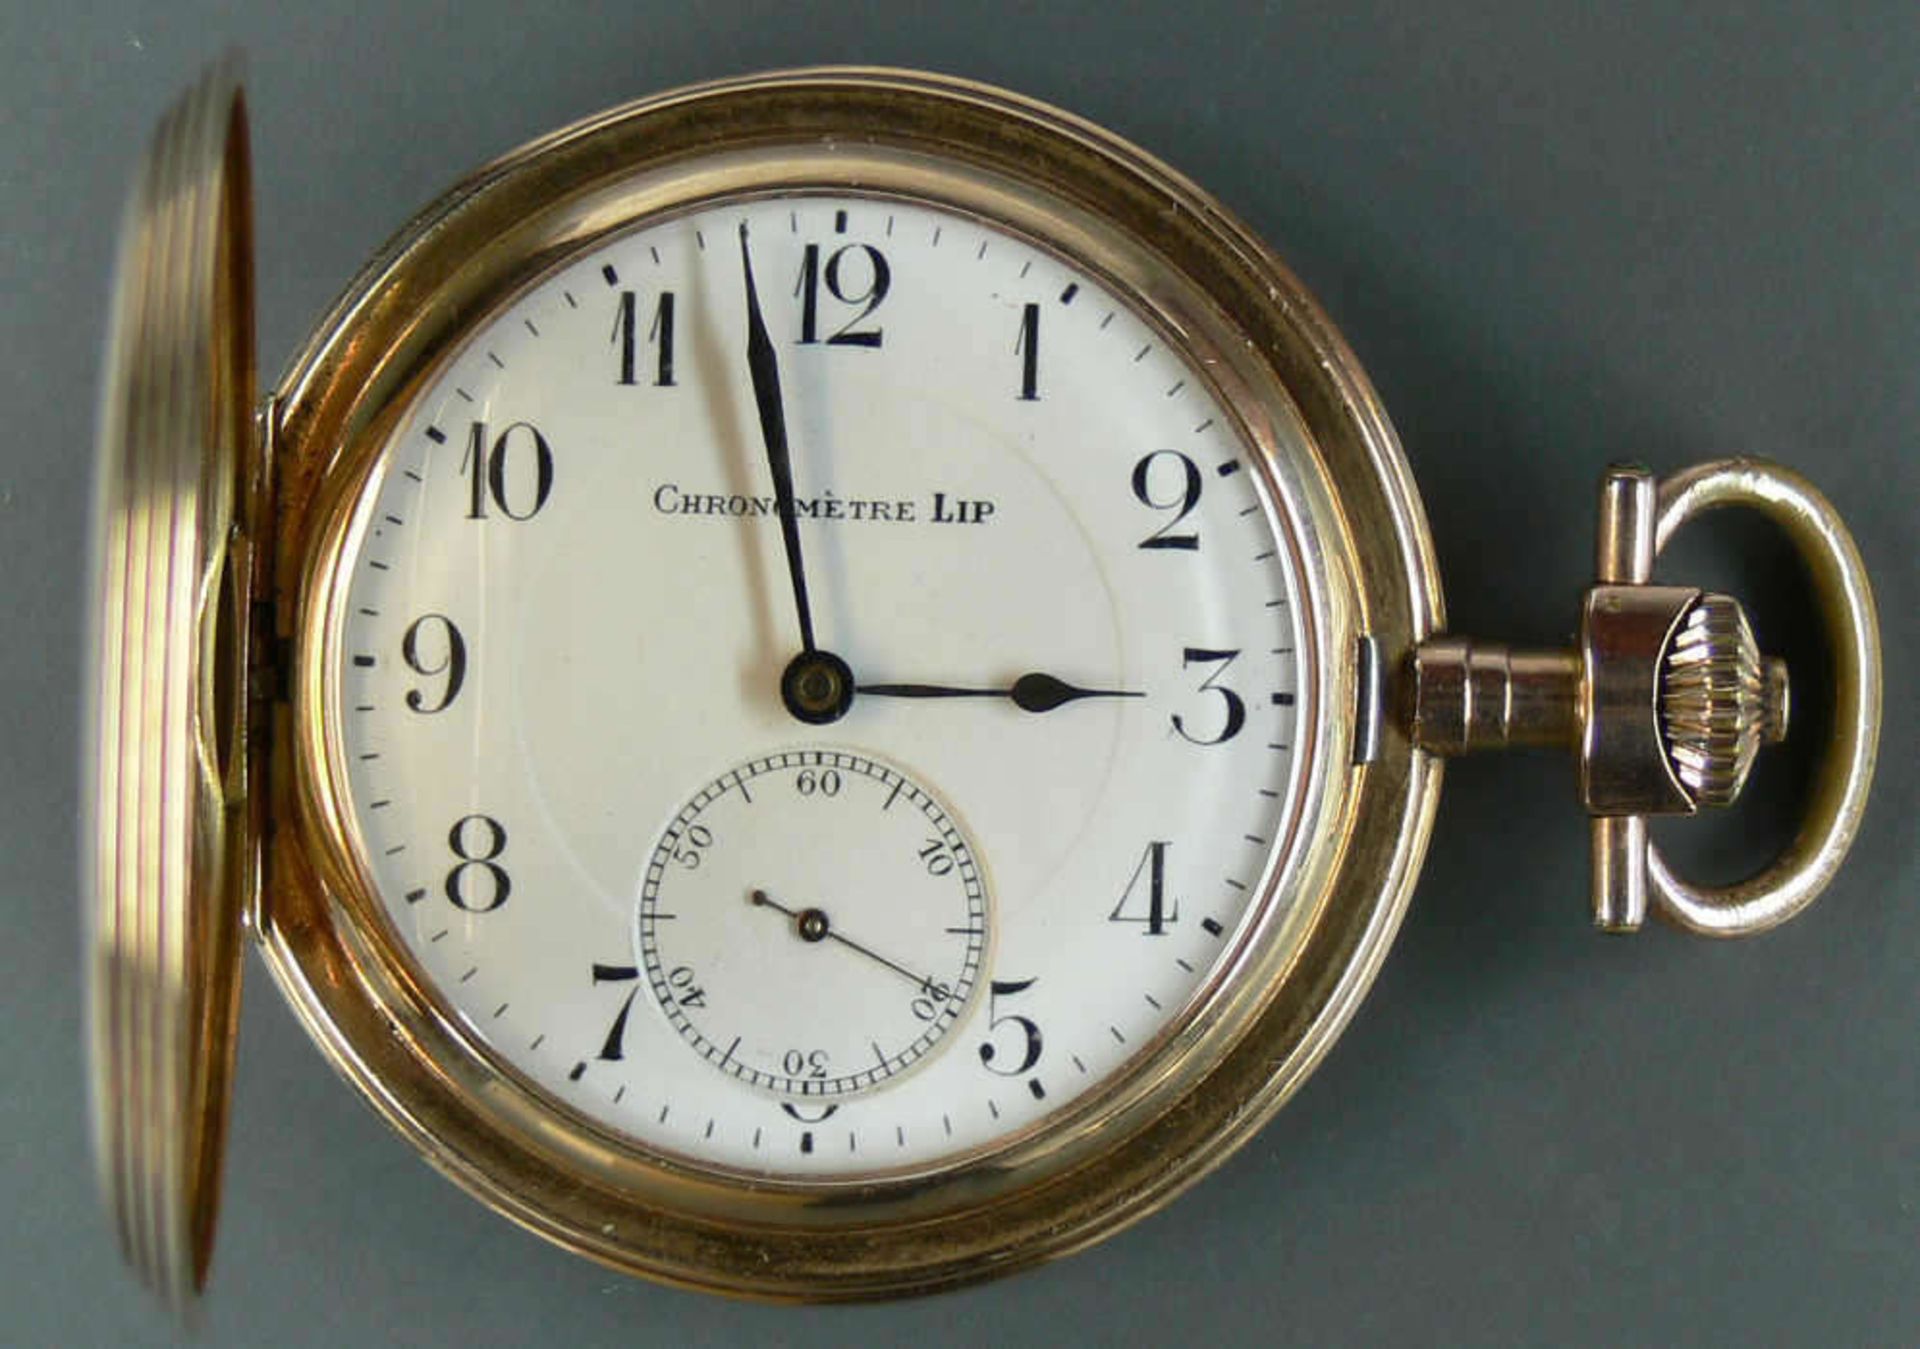 Gold - Taschenuhr "Chronometre LiP". Gold 585. Alle drei Deckel mit Goldpunze. Funktion geprüft. - Bild 2 aus 7